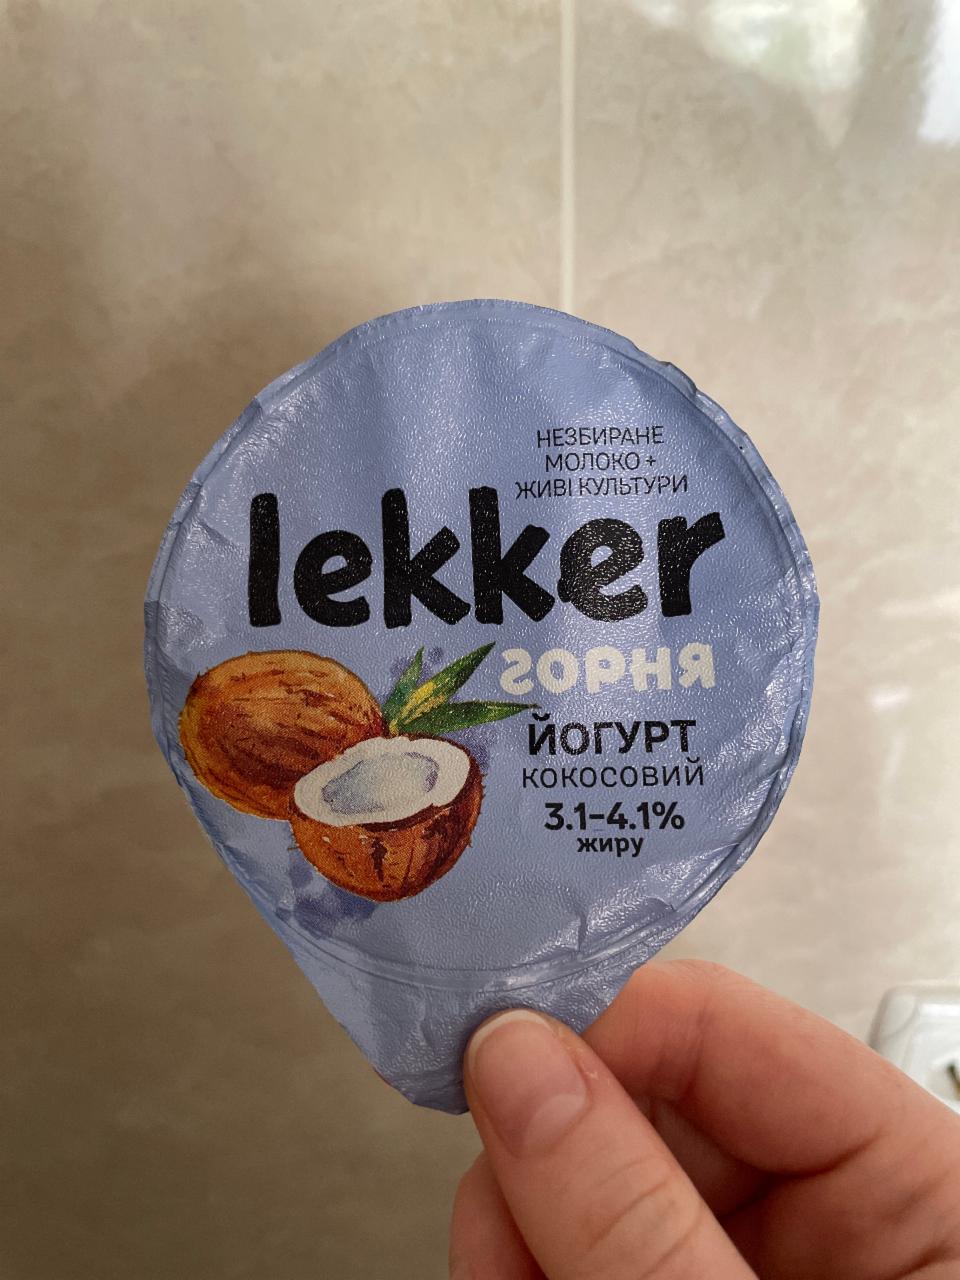 Фото - Йогурт кокосовый 3.1-4.1% Lekker